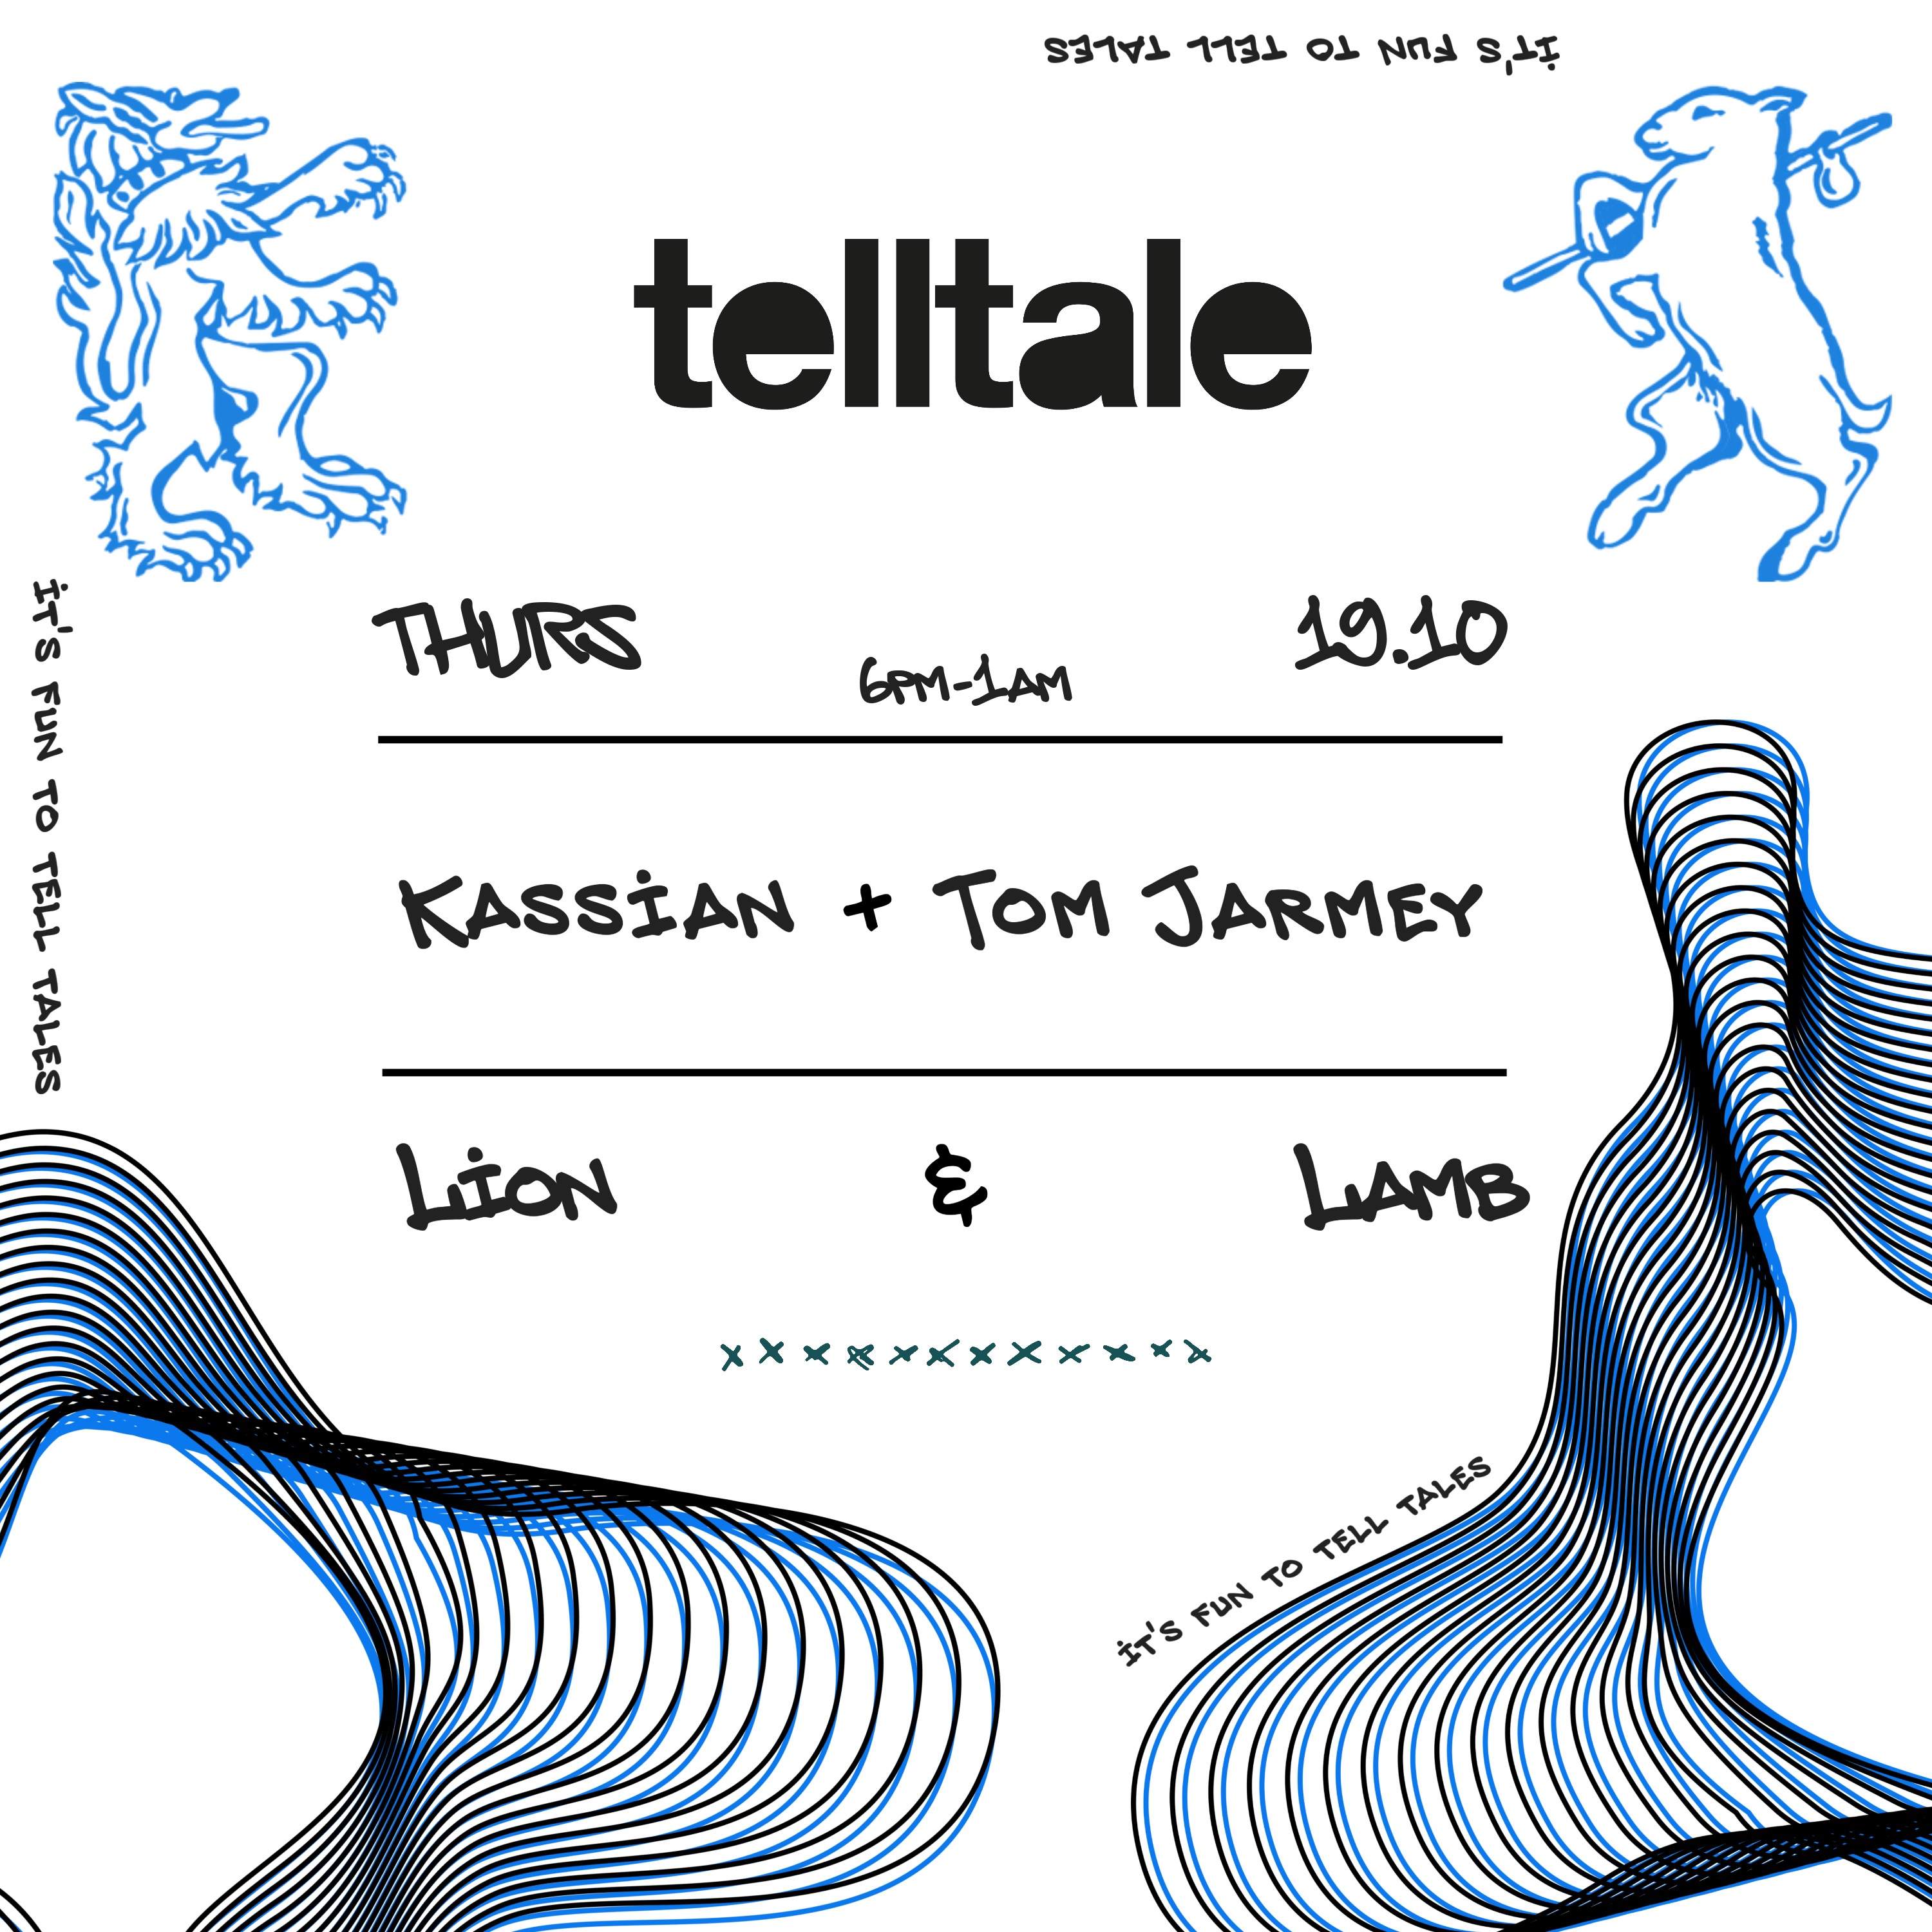 telltale at Lion & Lamb with Kassian + Tom Jarmey - Página frontal